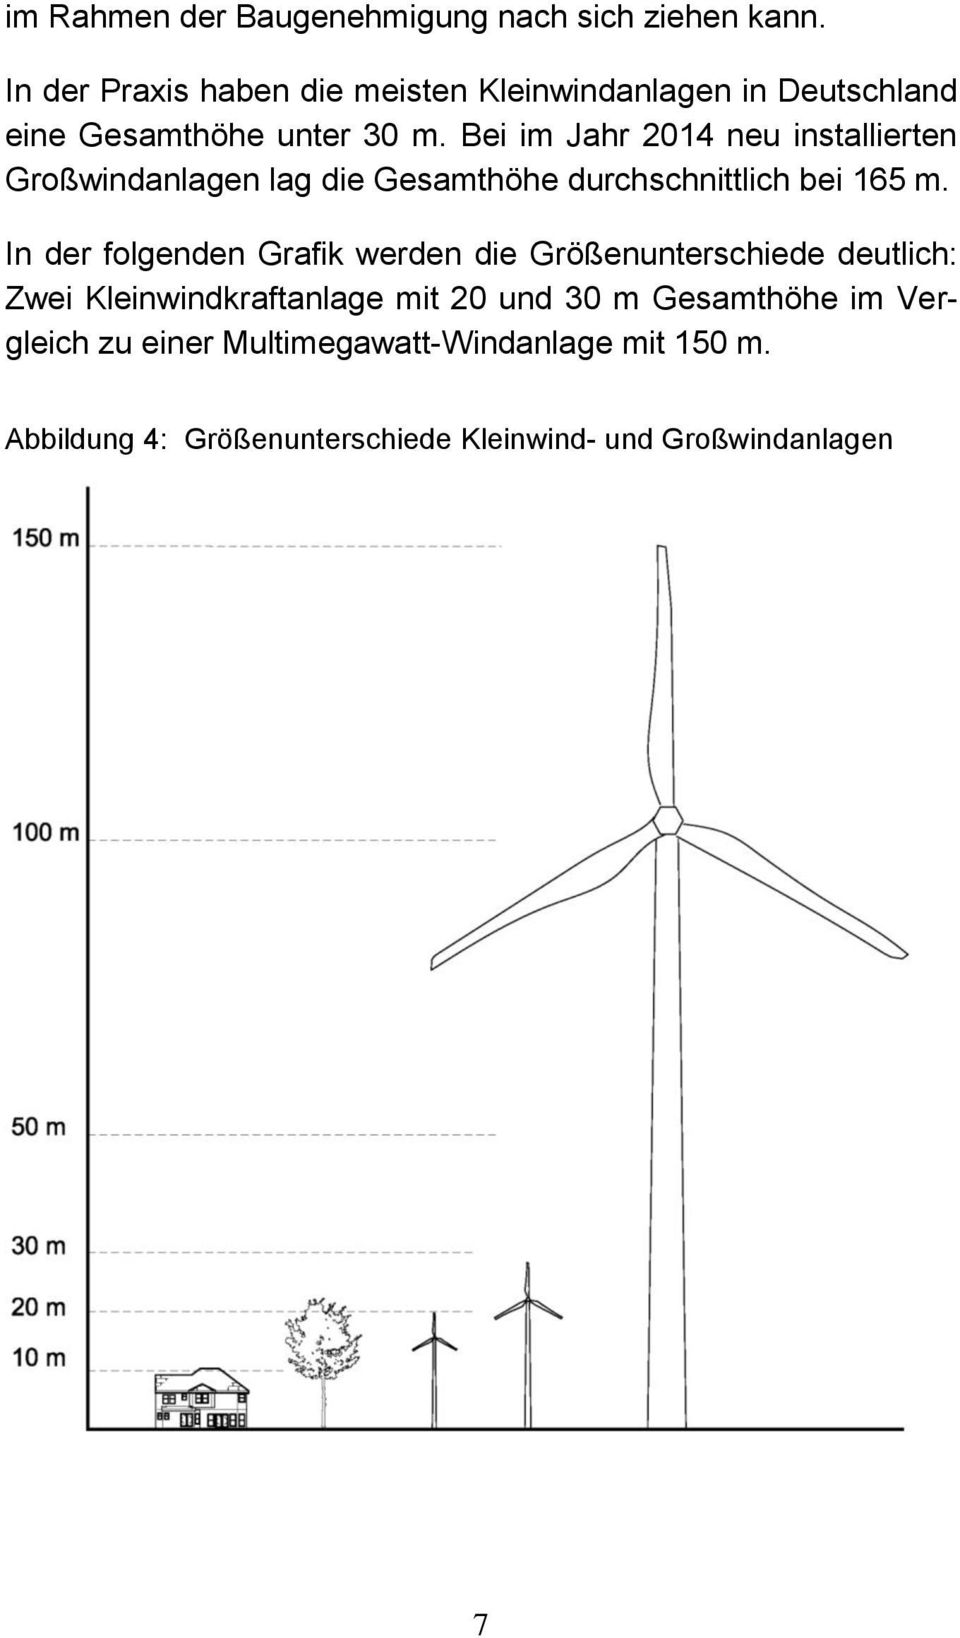 Bei im Jahr 2014 neu installierten Großwindanlagen lag die Gesamthöhe durchschnittlich bei 165 m.